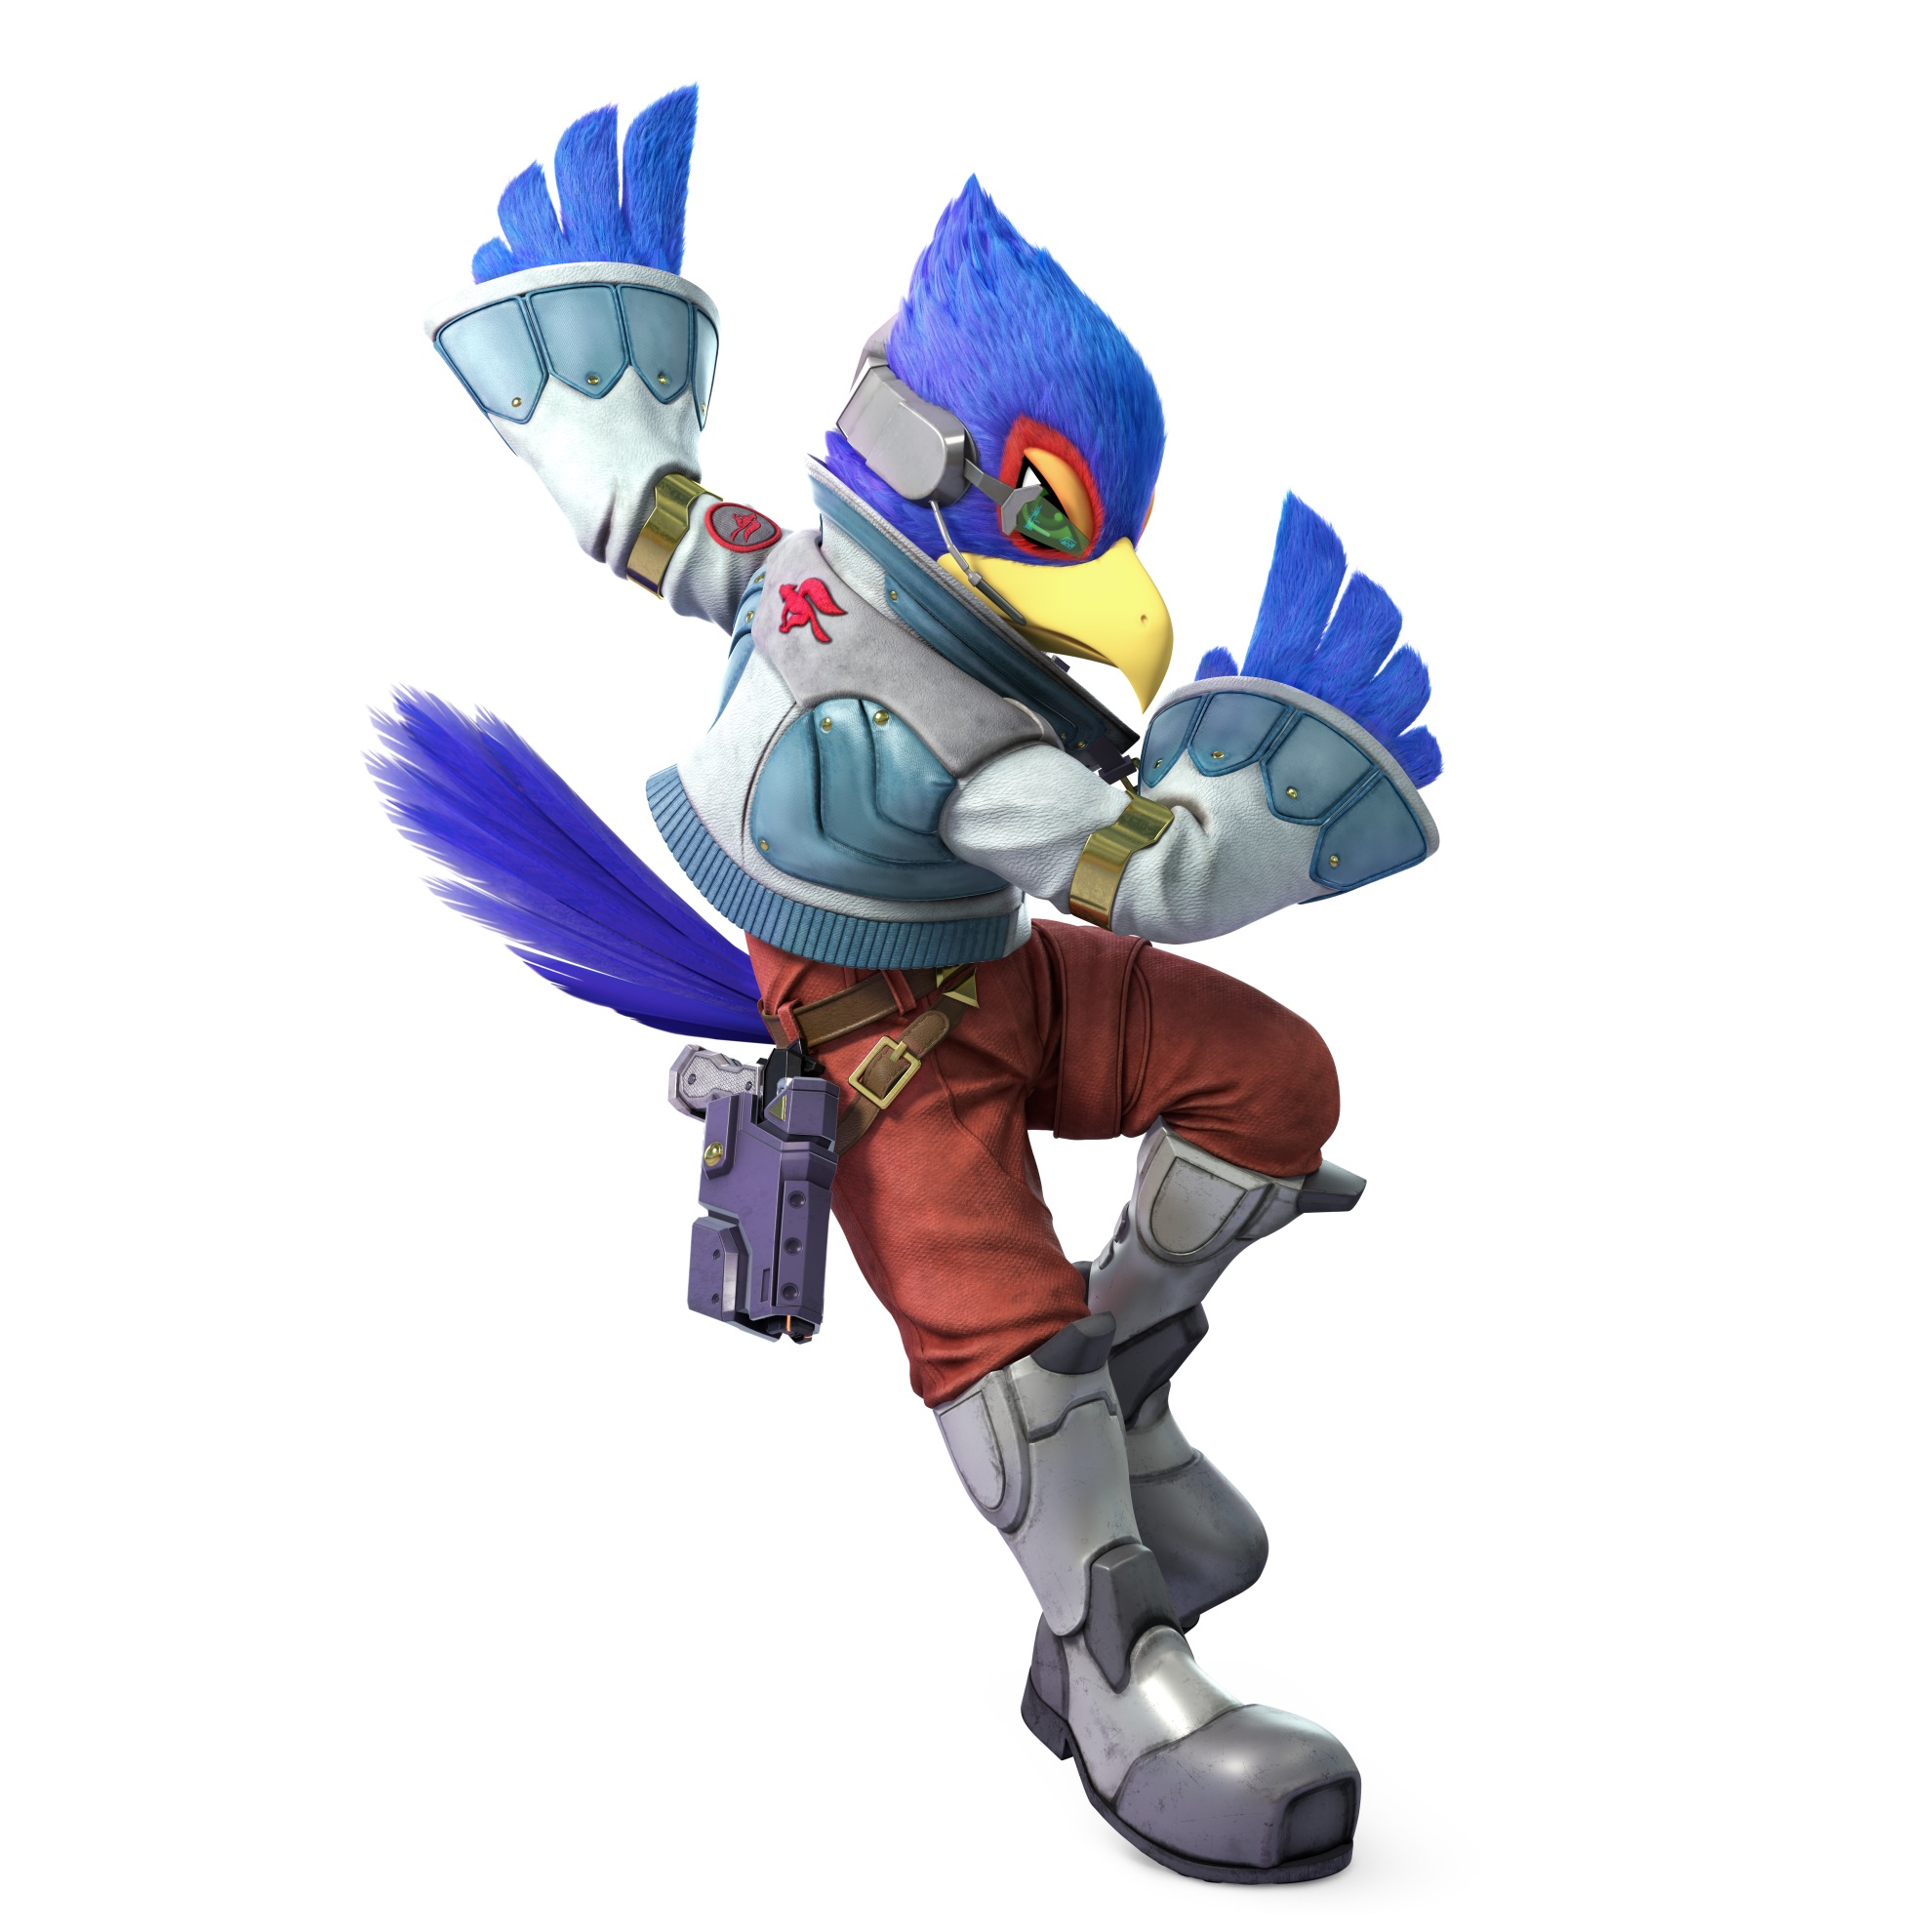 Falco Super Smash Bros. Ultimate Character Render